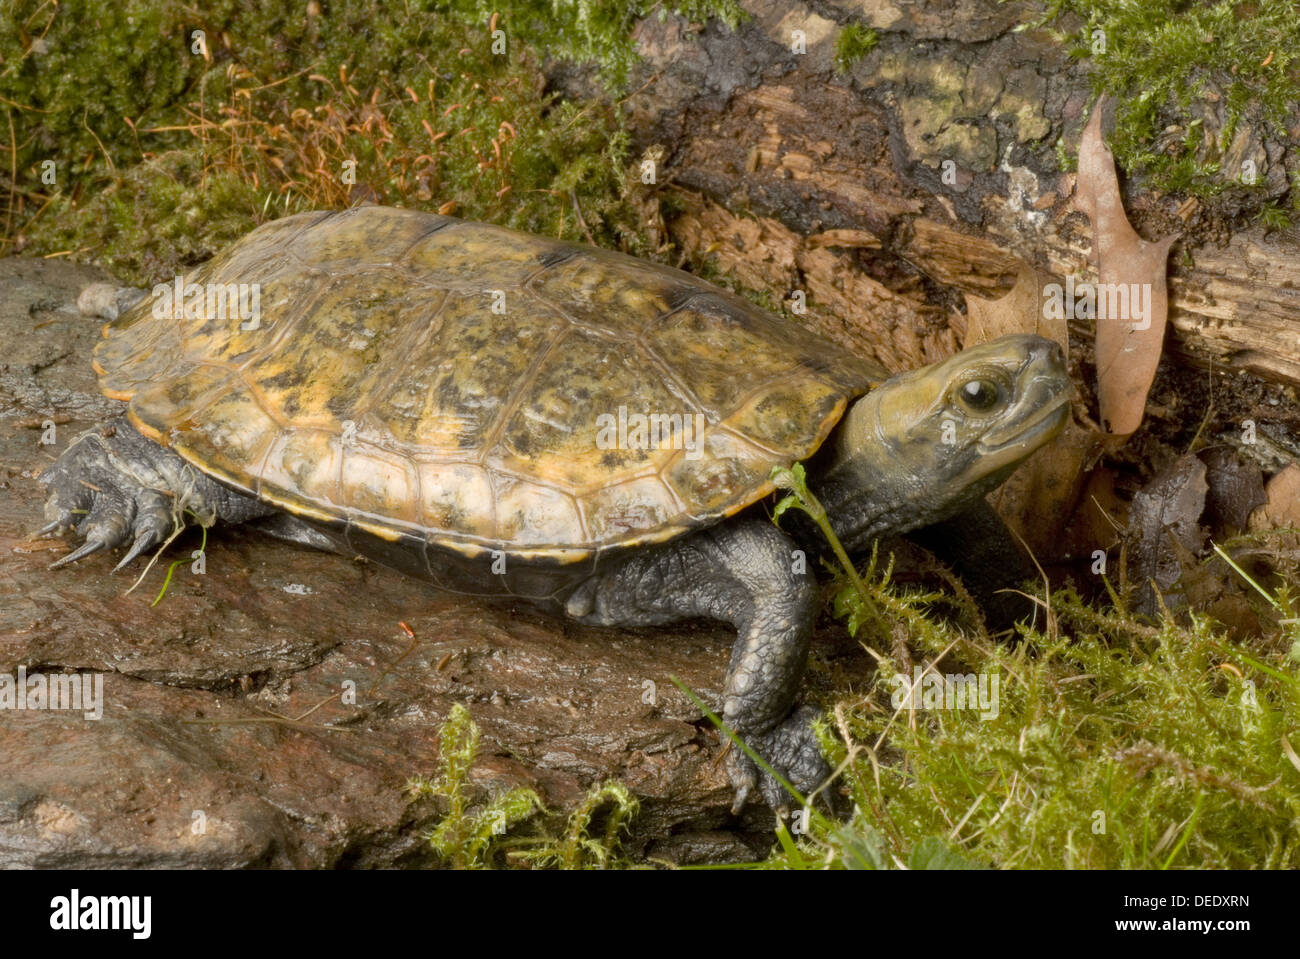 Japanese pond turtle, Mauremys japonica / Japanische Sumpfschildkröte, Mauremys japonica Stock Photo